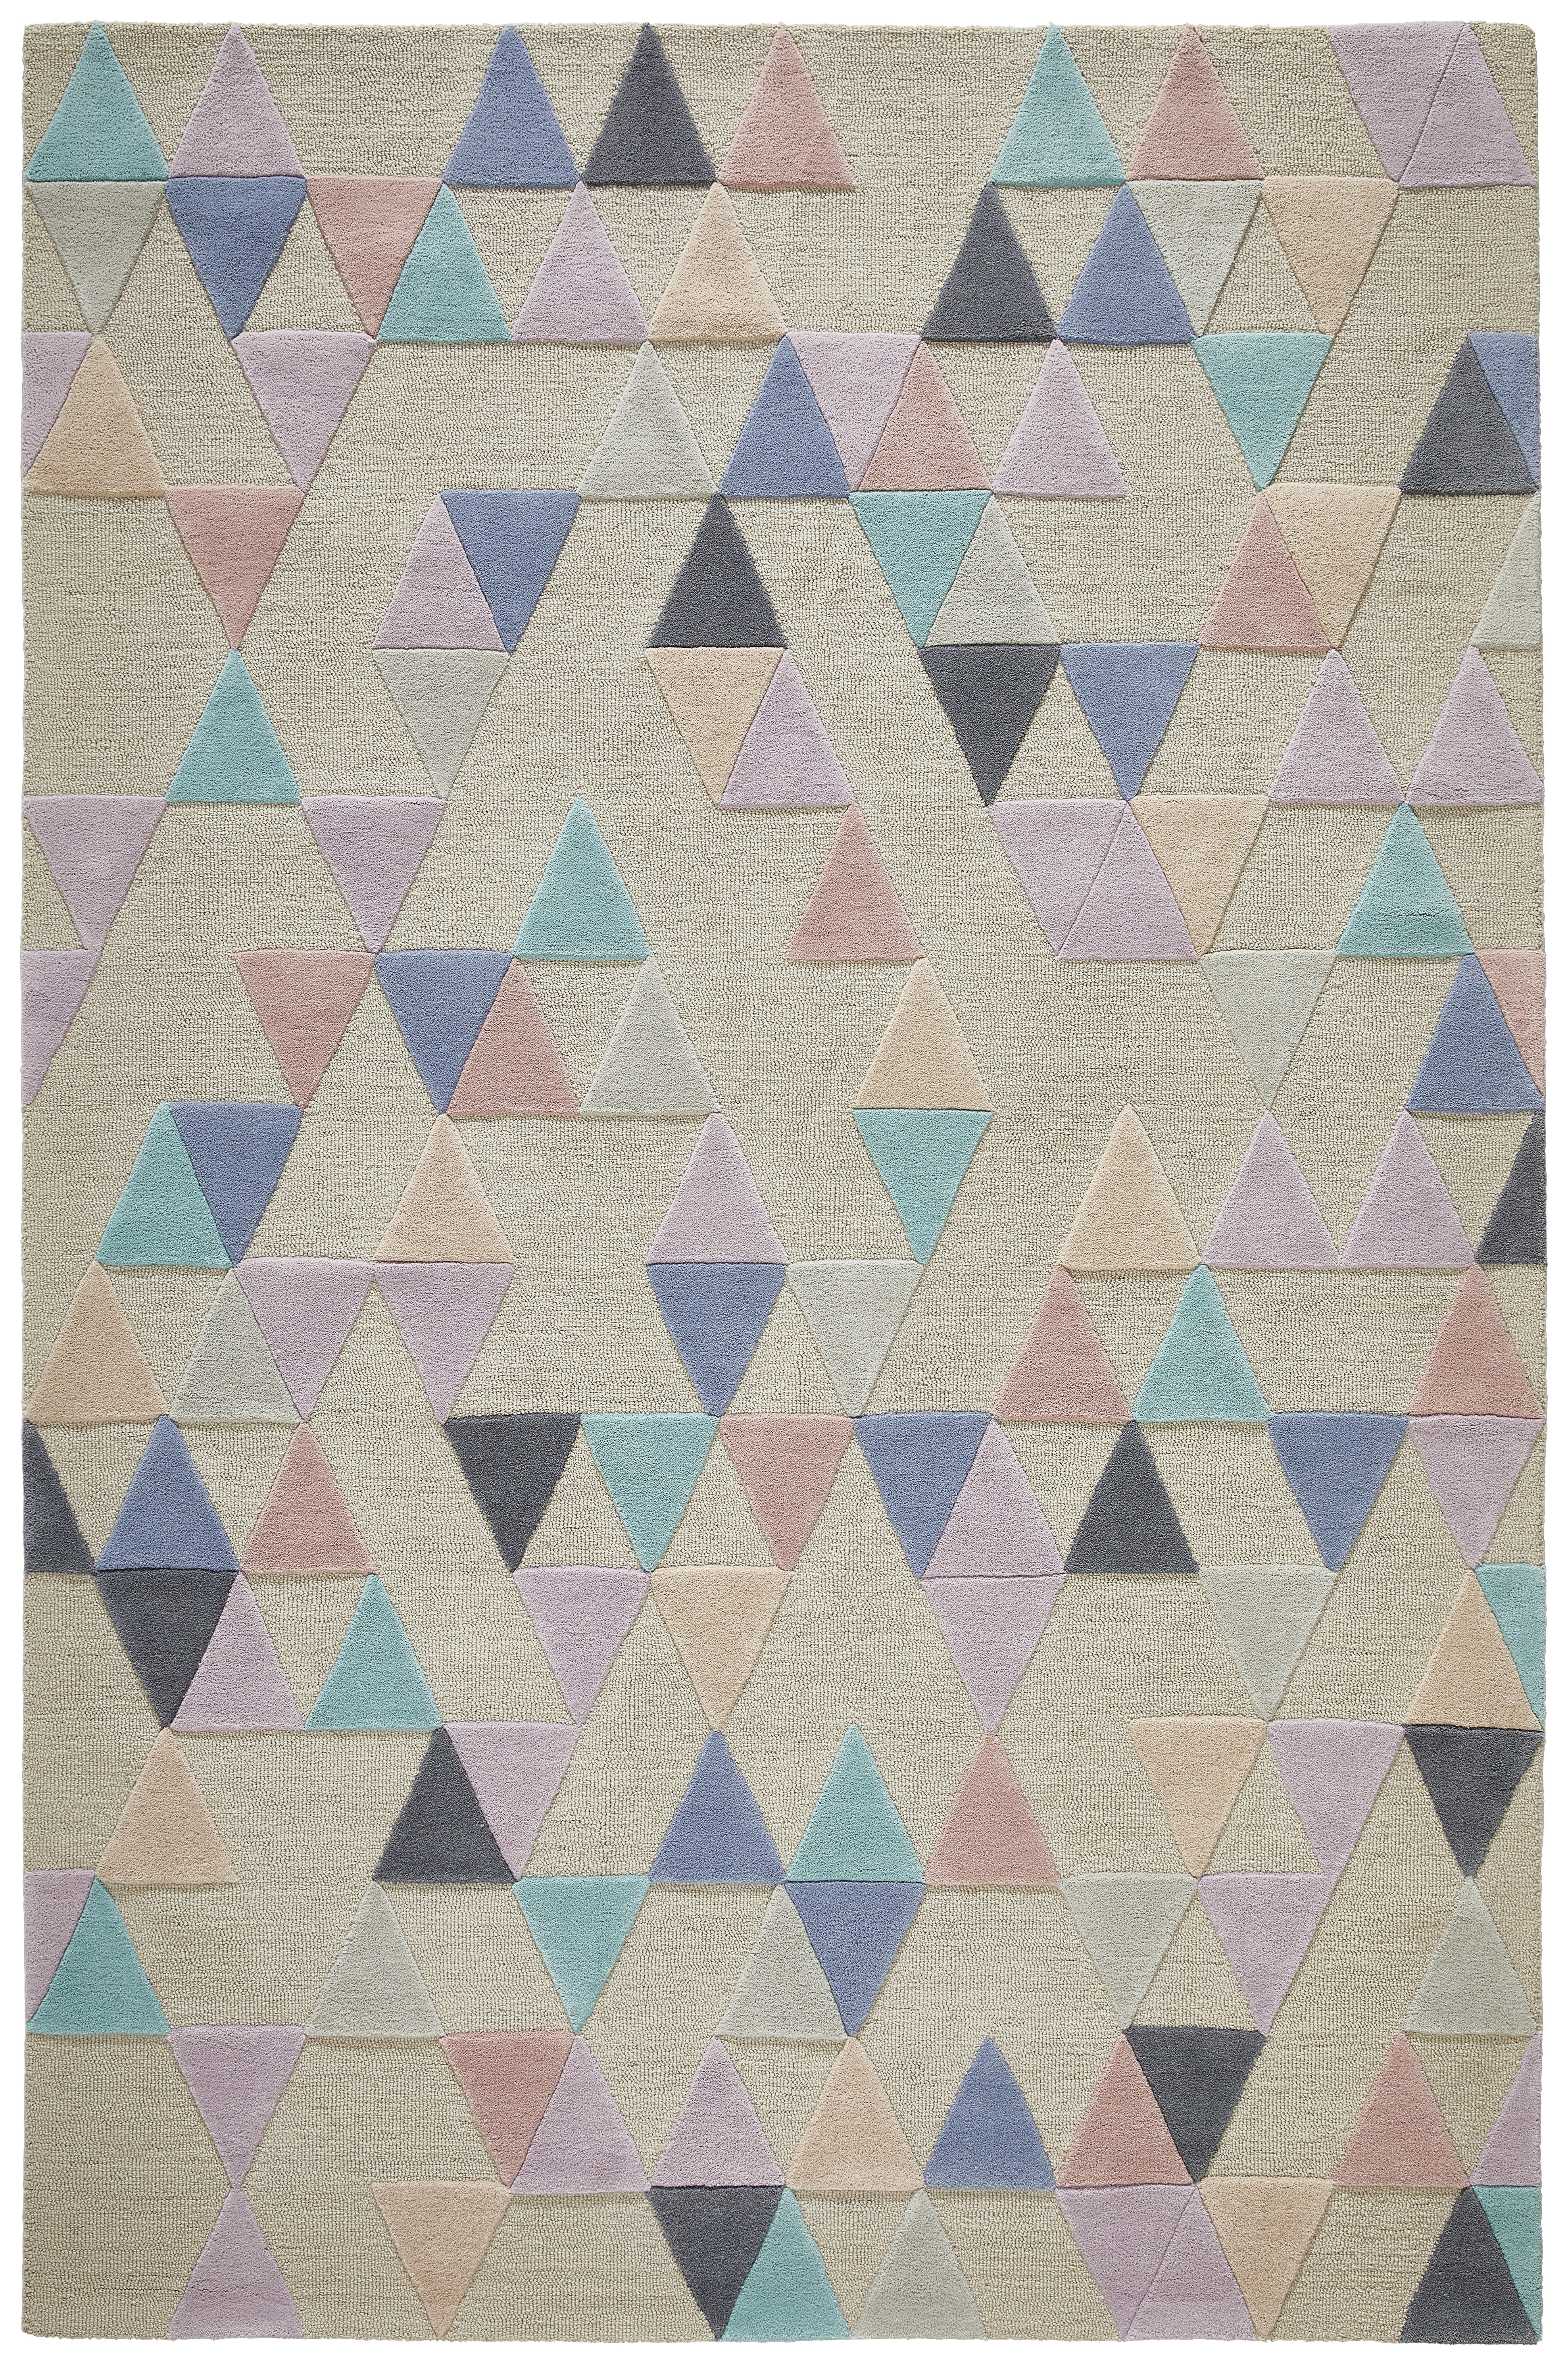 TUFTTEPPICH  160/230 cm  getuftet  Multicolor   - Multicolor, Trend, Textil (160/230cm) - Novel